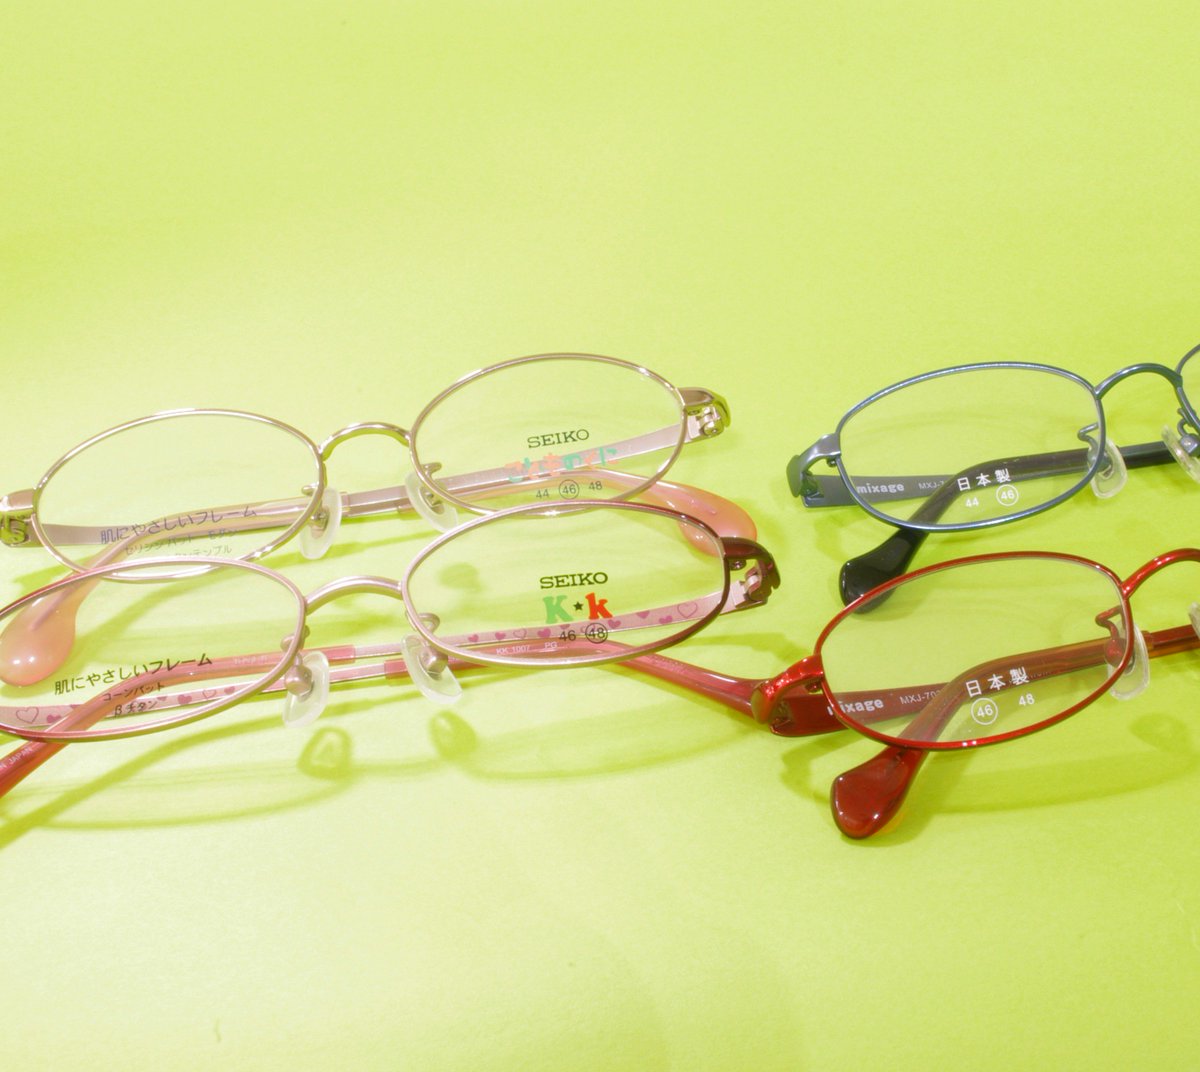 伊澤康一郎 メガネのイザワ認定眼鏡士 בטוויטר 子供用フレームはサイズが小さいだけじゃなく故障リスクを抑えるために溶接面を広く取ったりゆがみ等が起こりにくいようにデザインされています 折角処方箋をちゃんともらってもサイズが合ってしっかり調整